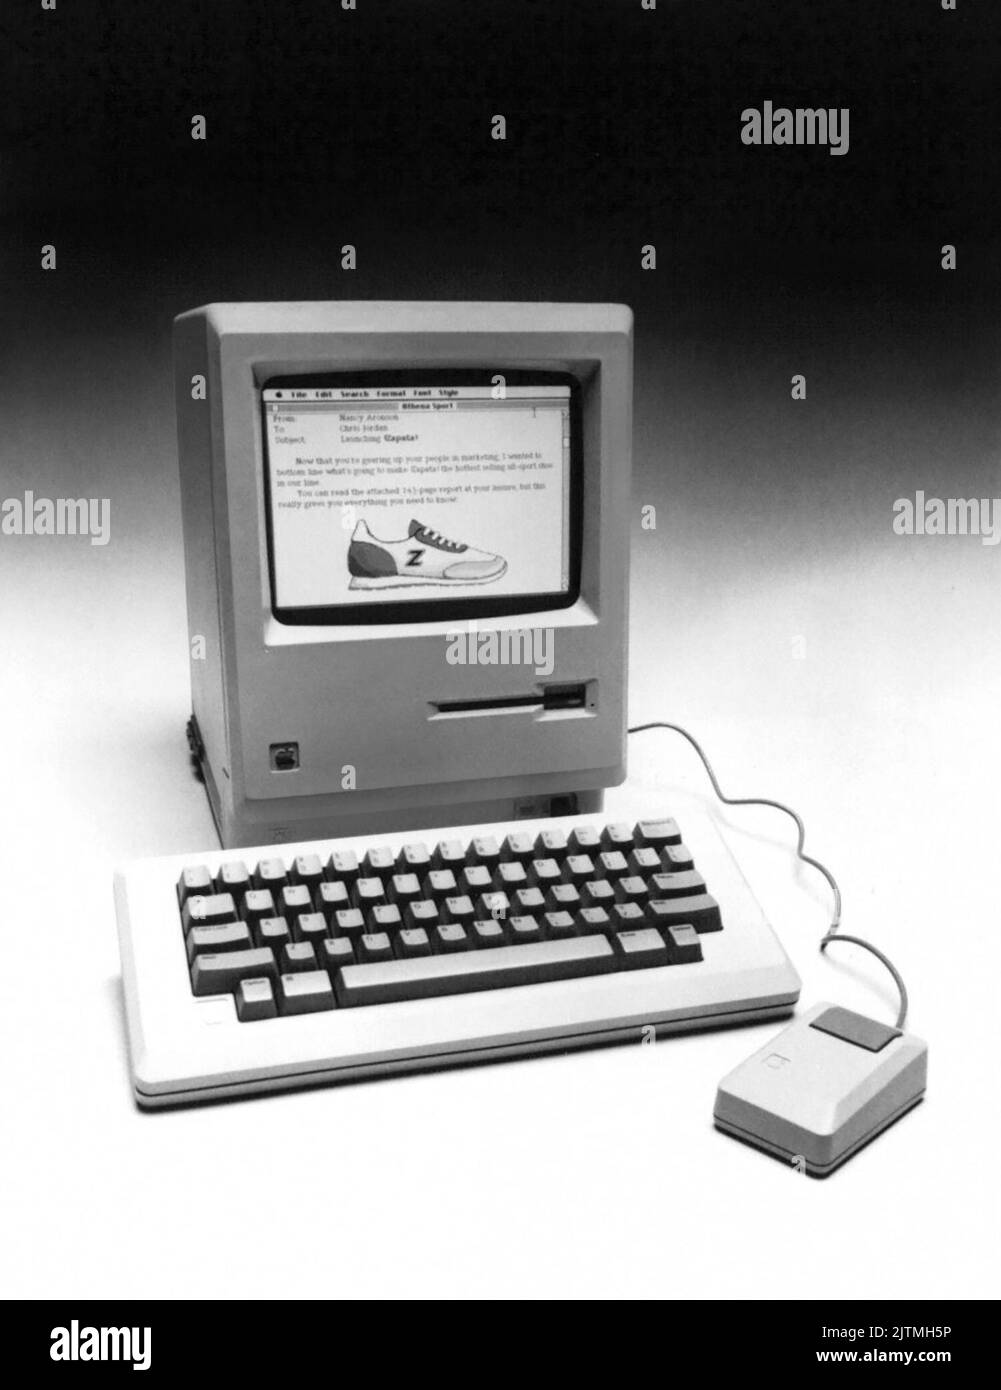 Photo publicitaire d'Apple Computer de janvier 1984 de leur tout nouvel ordinateur Macintosh. Apple a annoncé que le nouveau Macintosh est doté d'un microprocesseur 32 bits, d'un lecteur de disque intégré de 3,5 pouces, d'un écran noir sur blanc de 9 pouces, de 64k de ROM et de 128k de RAM, ainsi que d'un clavier amovible et d'un dispositif de pointage de souris. Prix de détail suggéré - 2 495 $. Banque D'Images